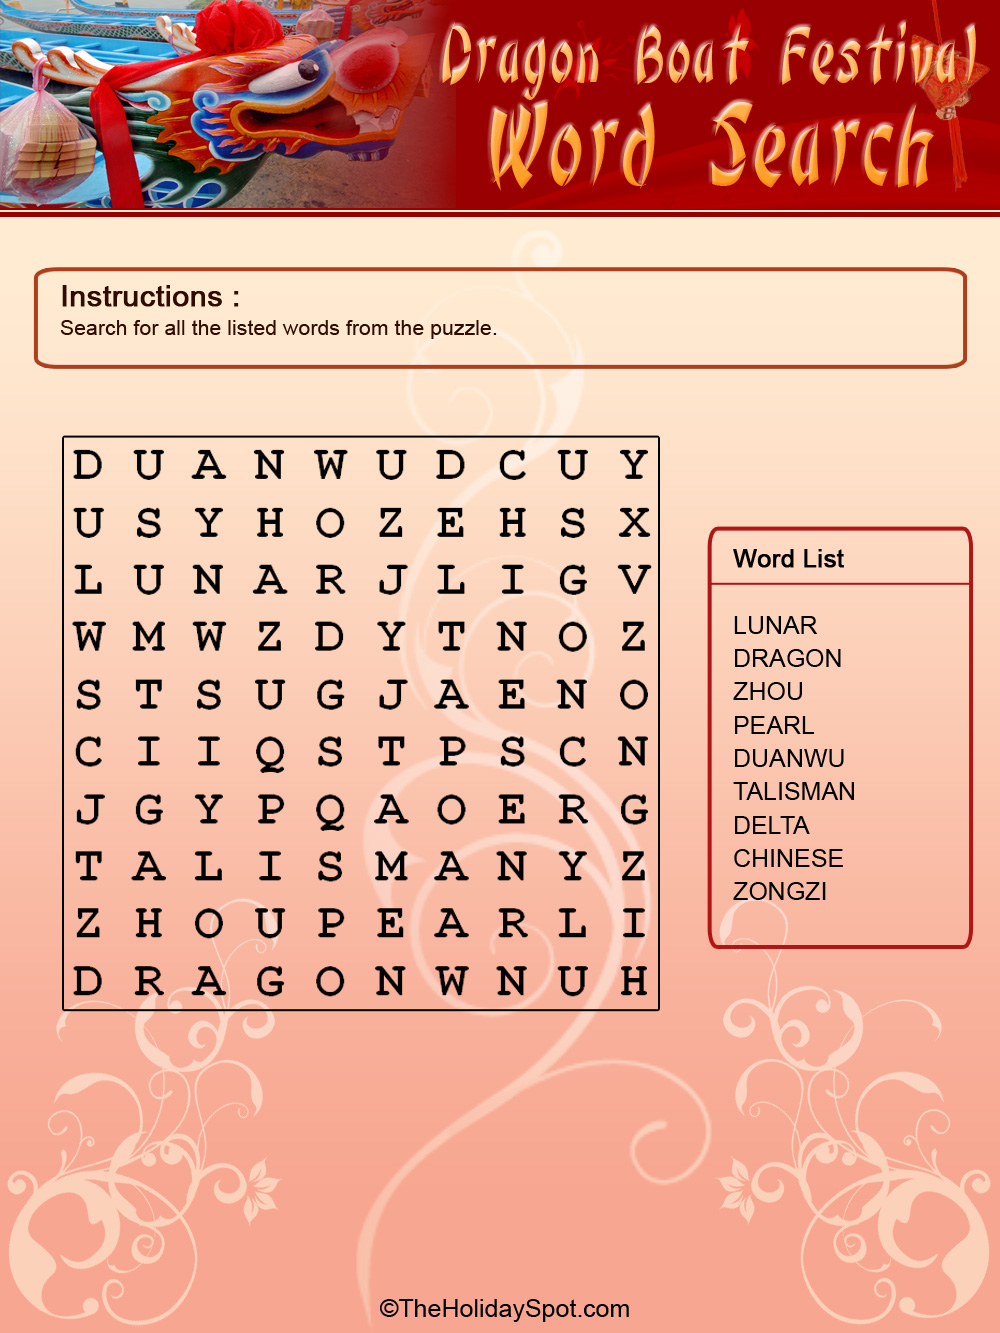 Dragon Boat Festival color Word Search template